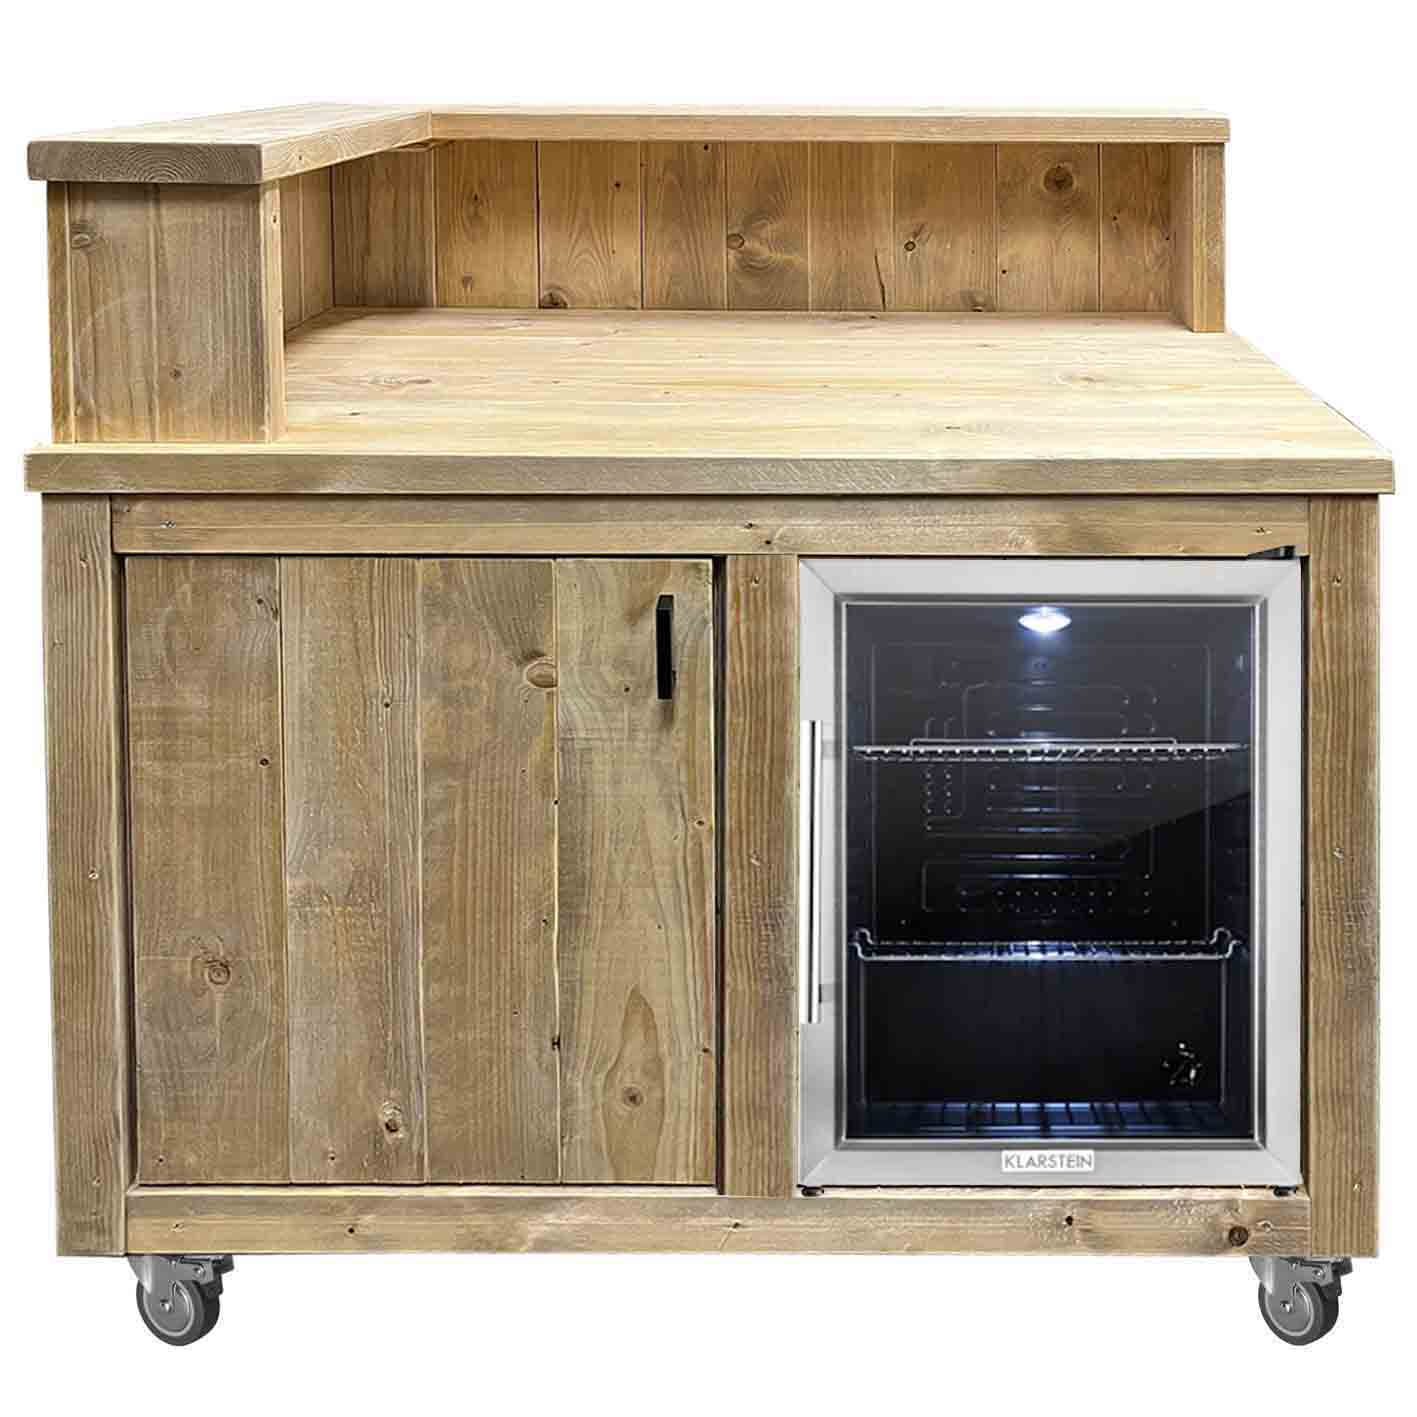 Bauholz Style: Grilltisch - Outdoorküchen Kühlschrank Modul - "PERTHONE KITCHEN"